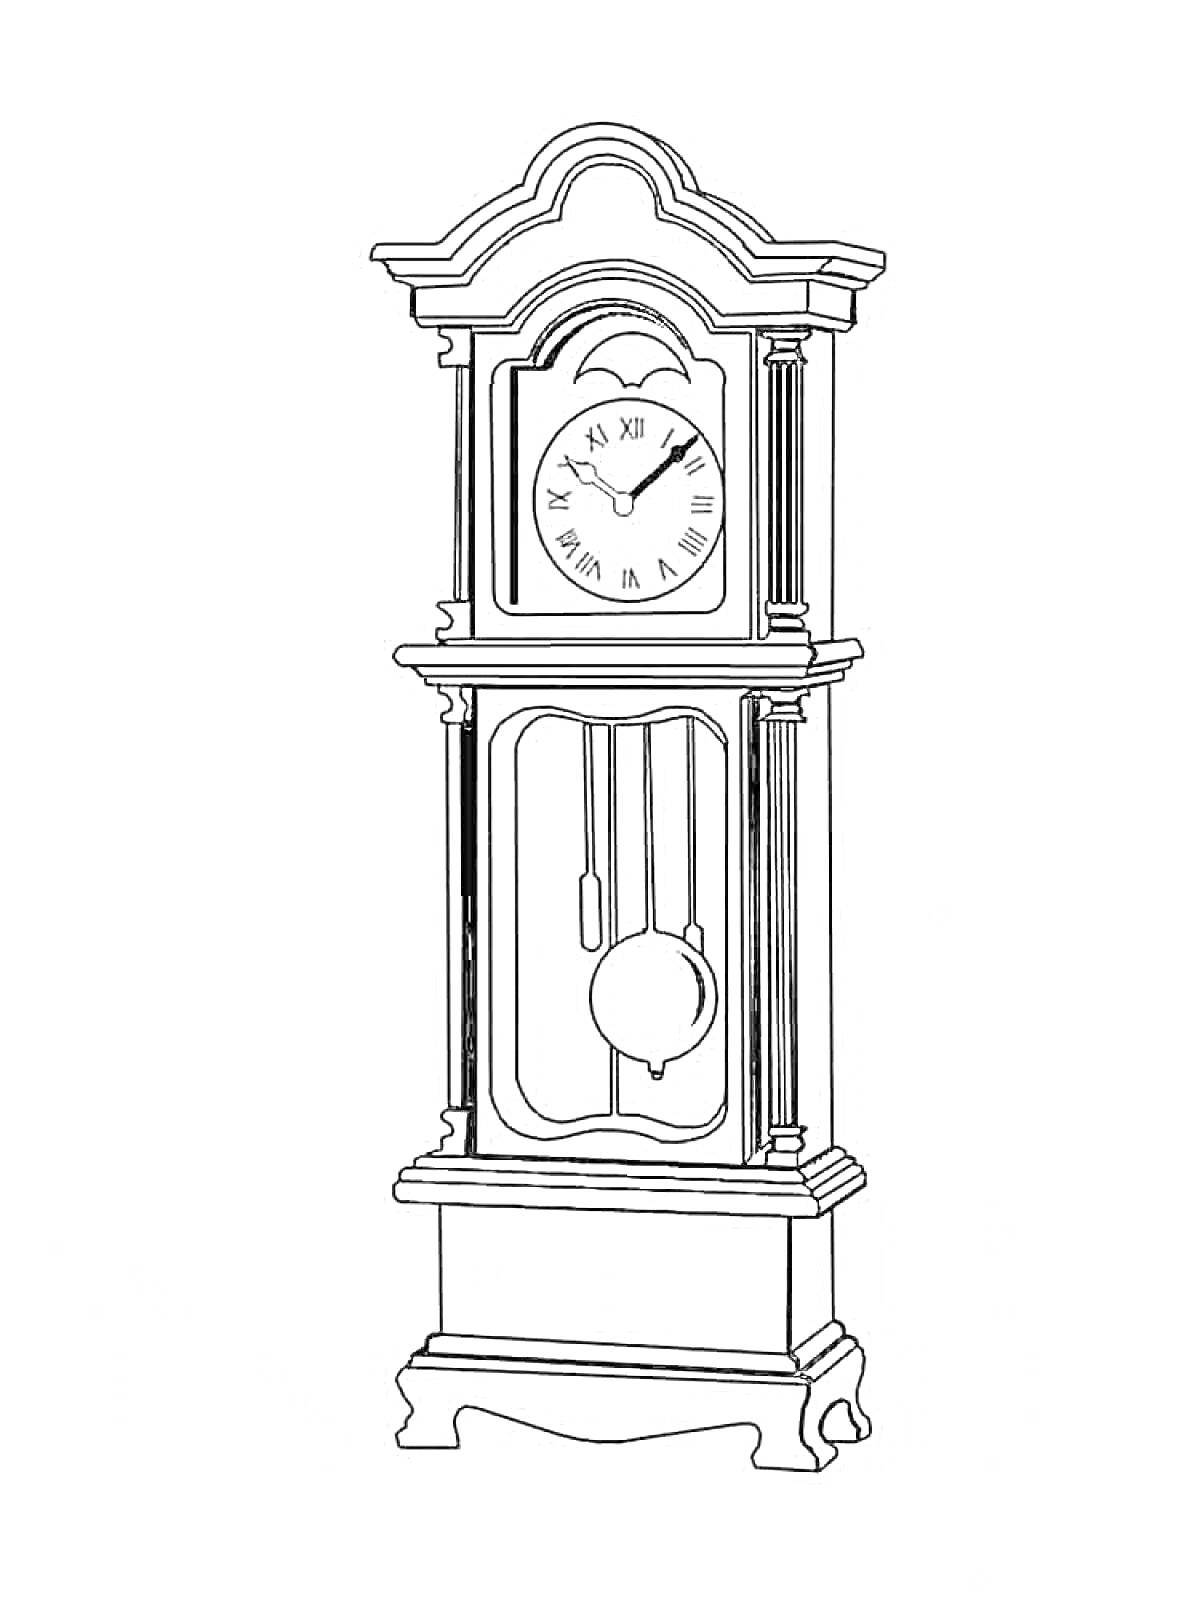 Напольные механические часы с маятником и римскими цифрами на циферблате